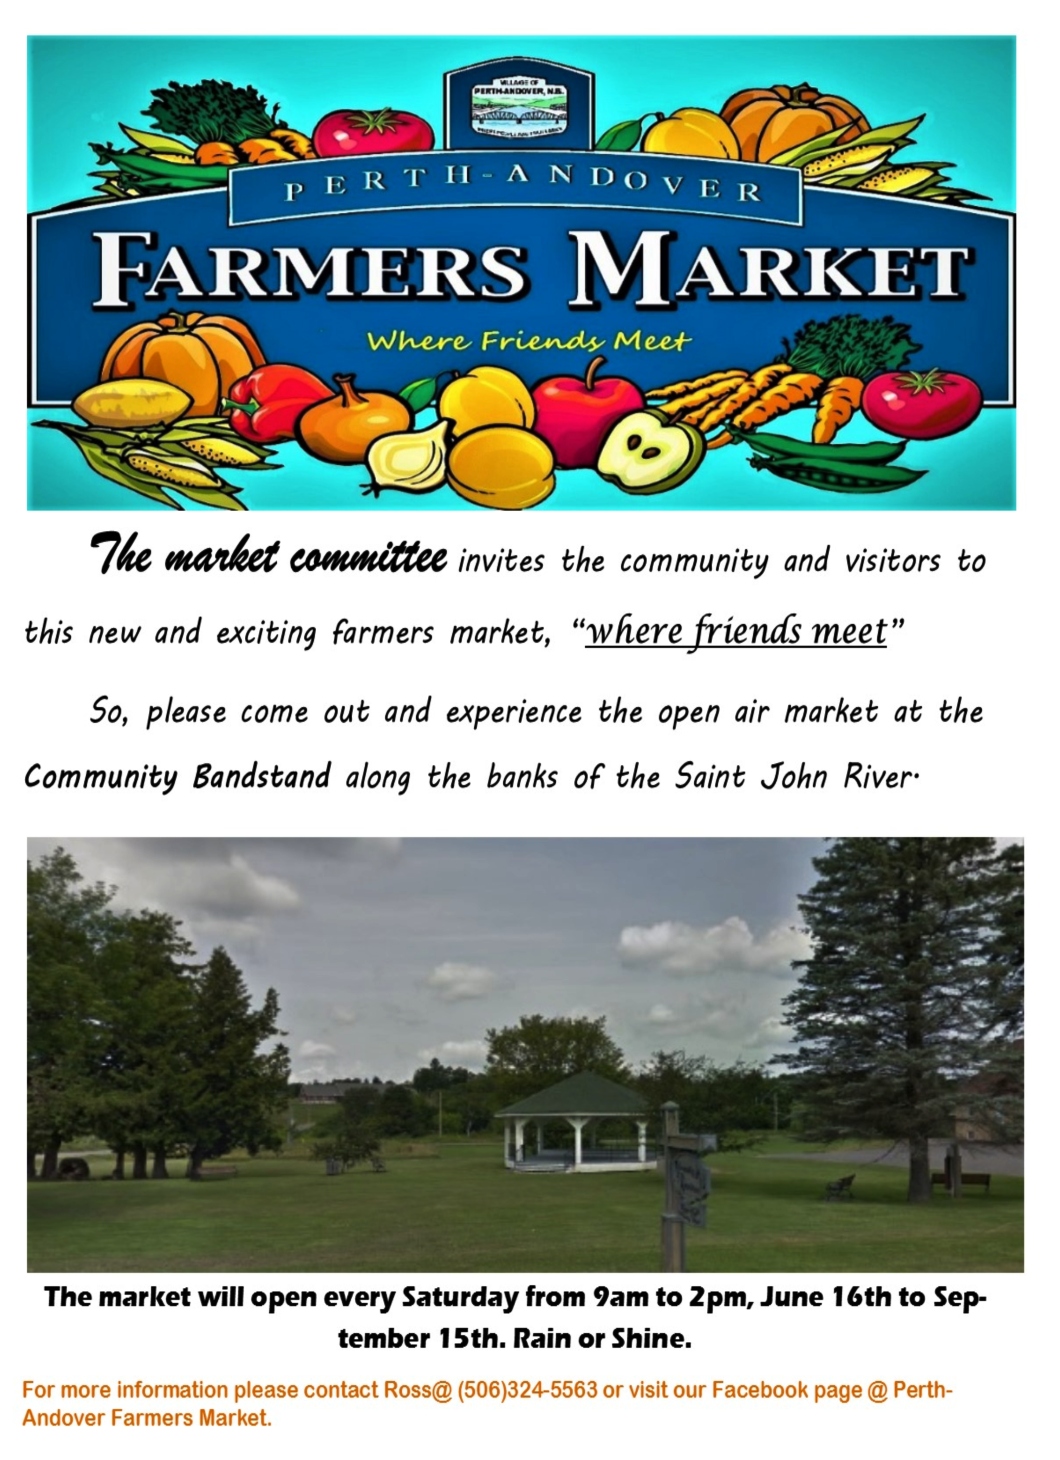 2018 Perth-Andover Farmer’s Market